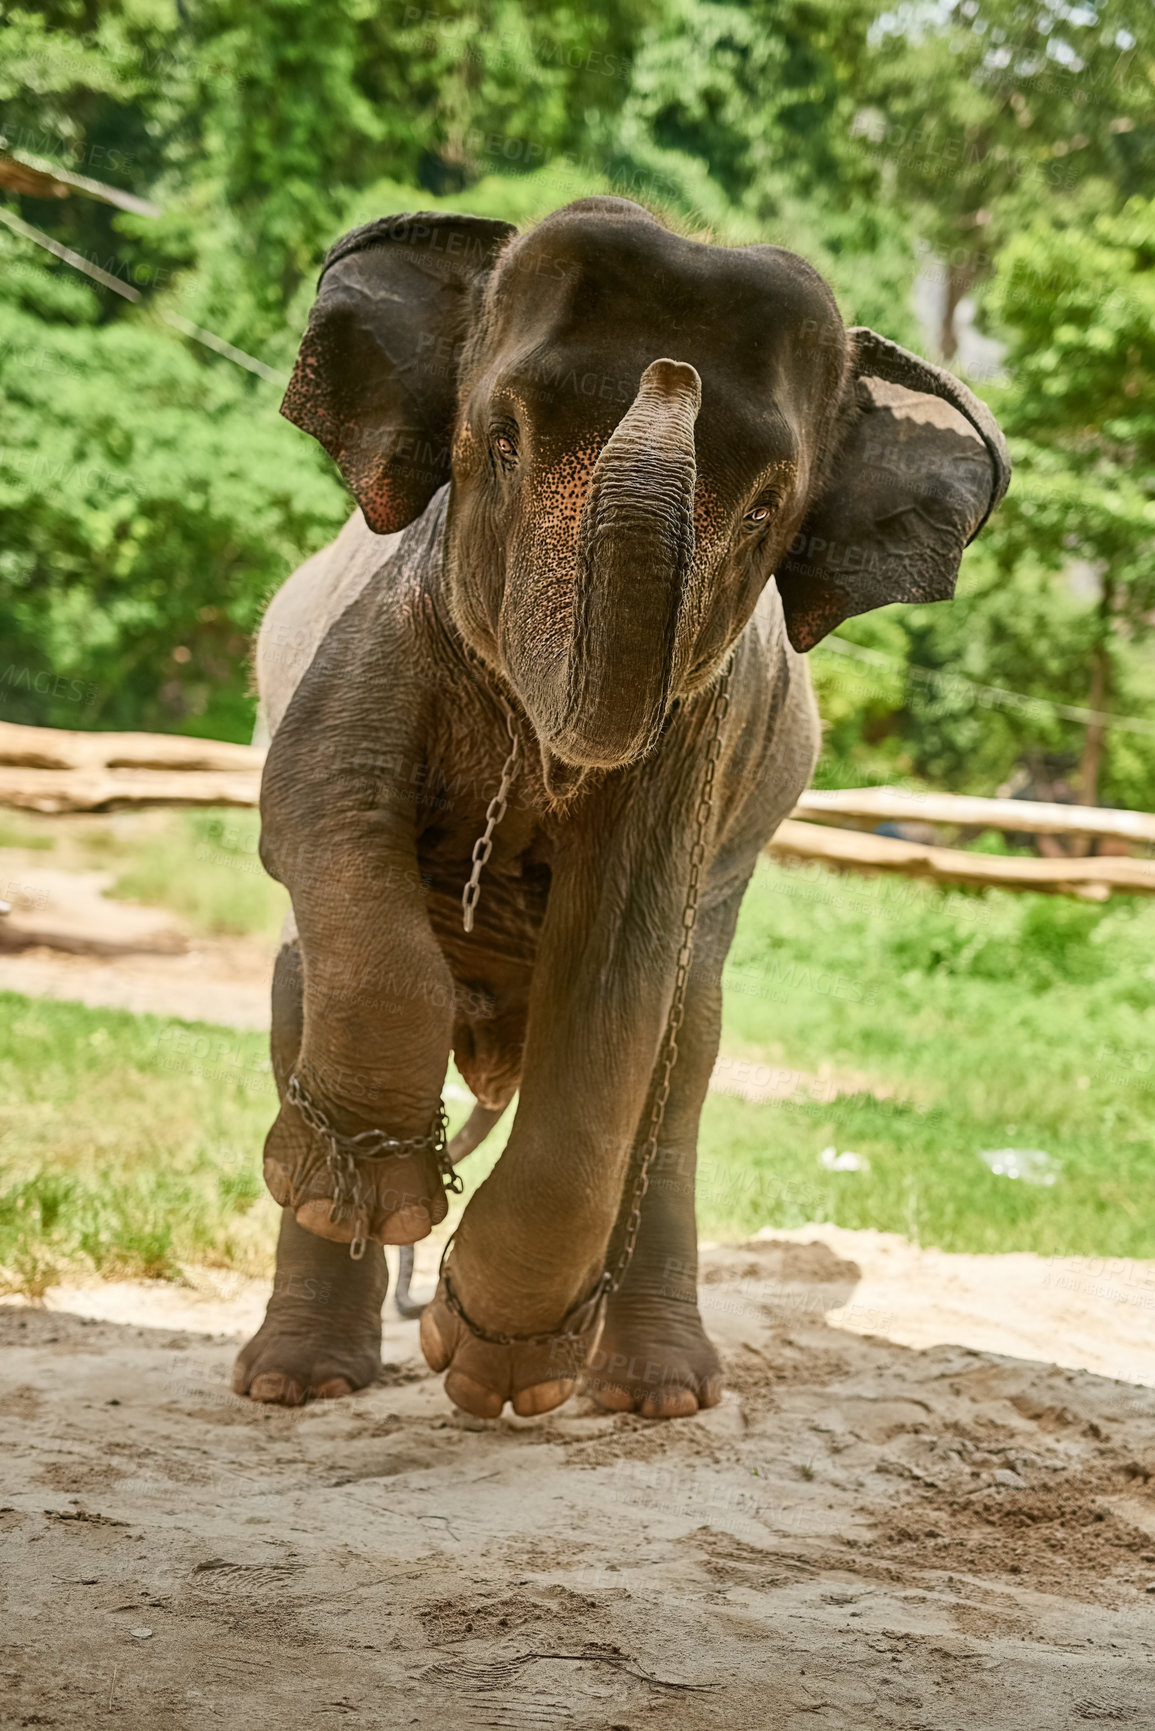 Buy stock photo Shot of an Asian elephant in captivity